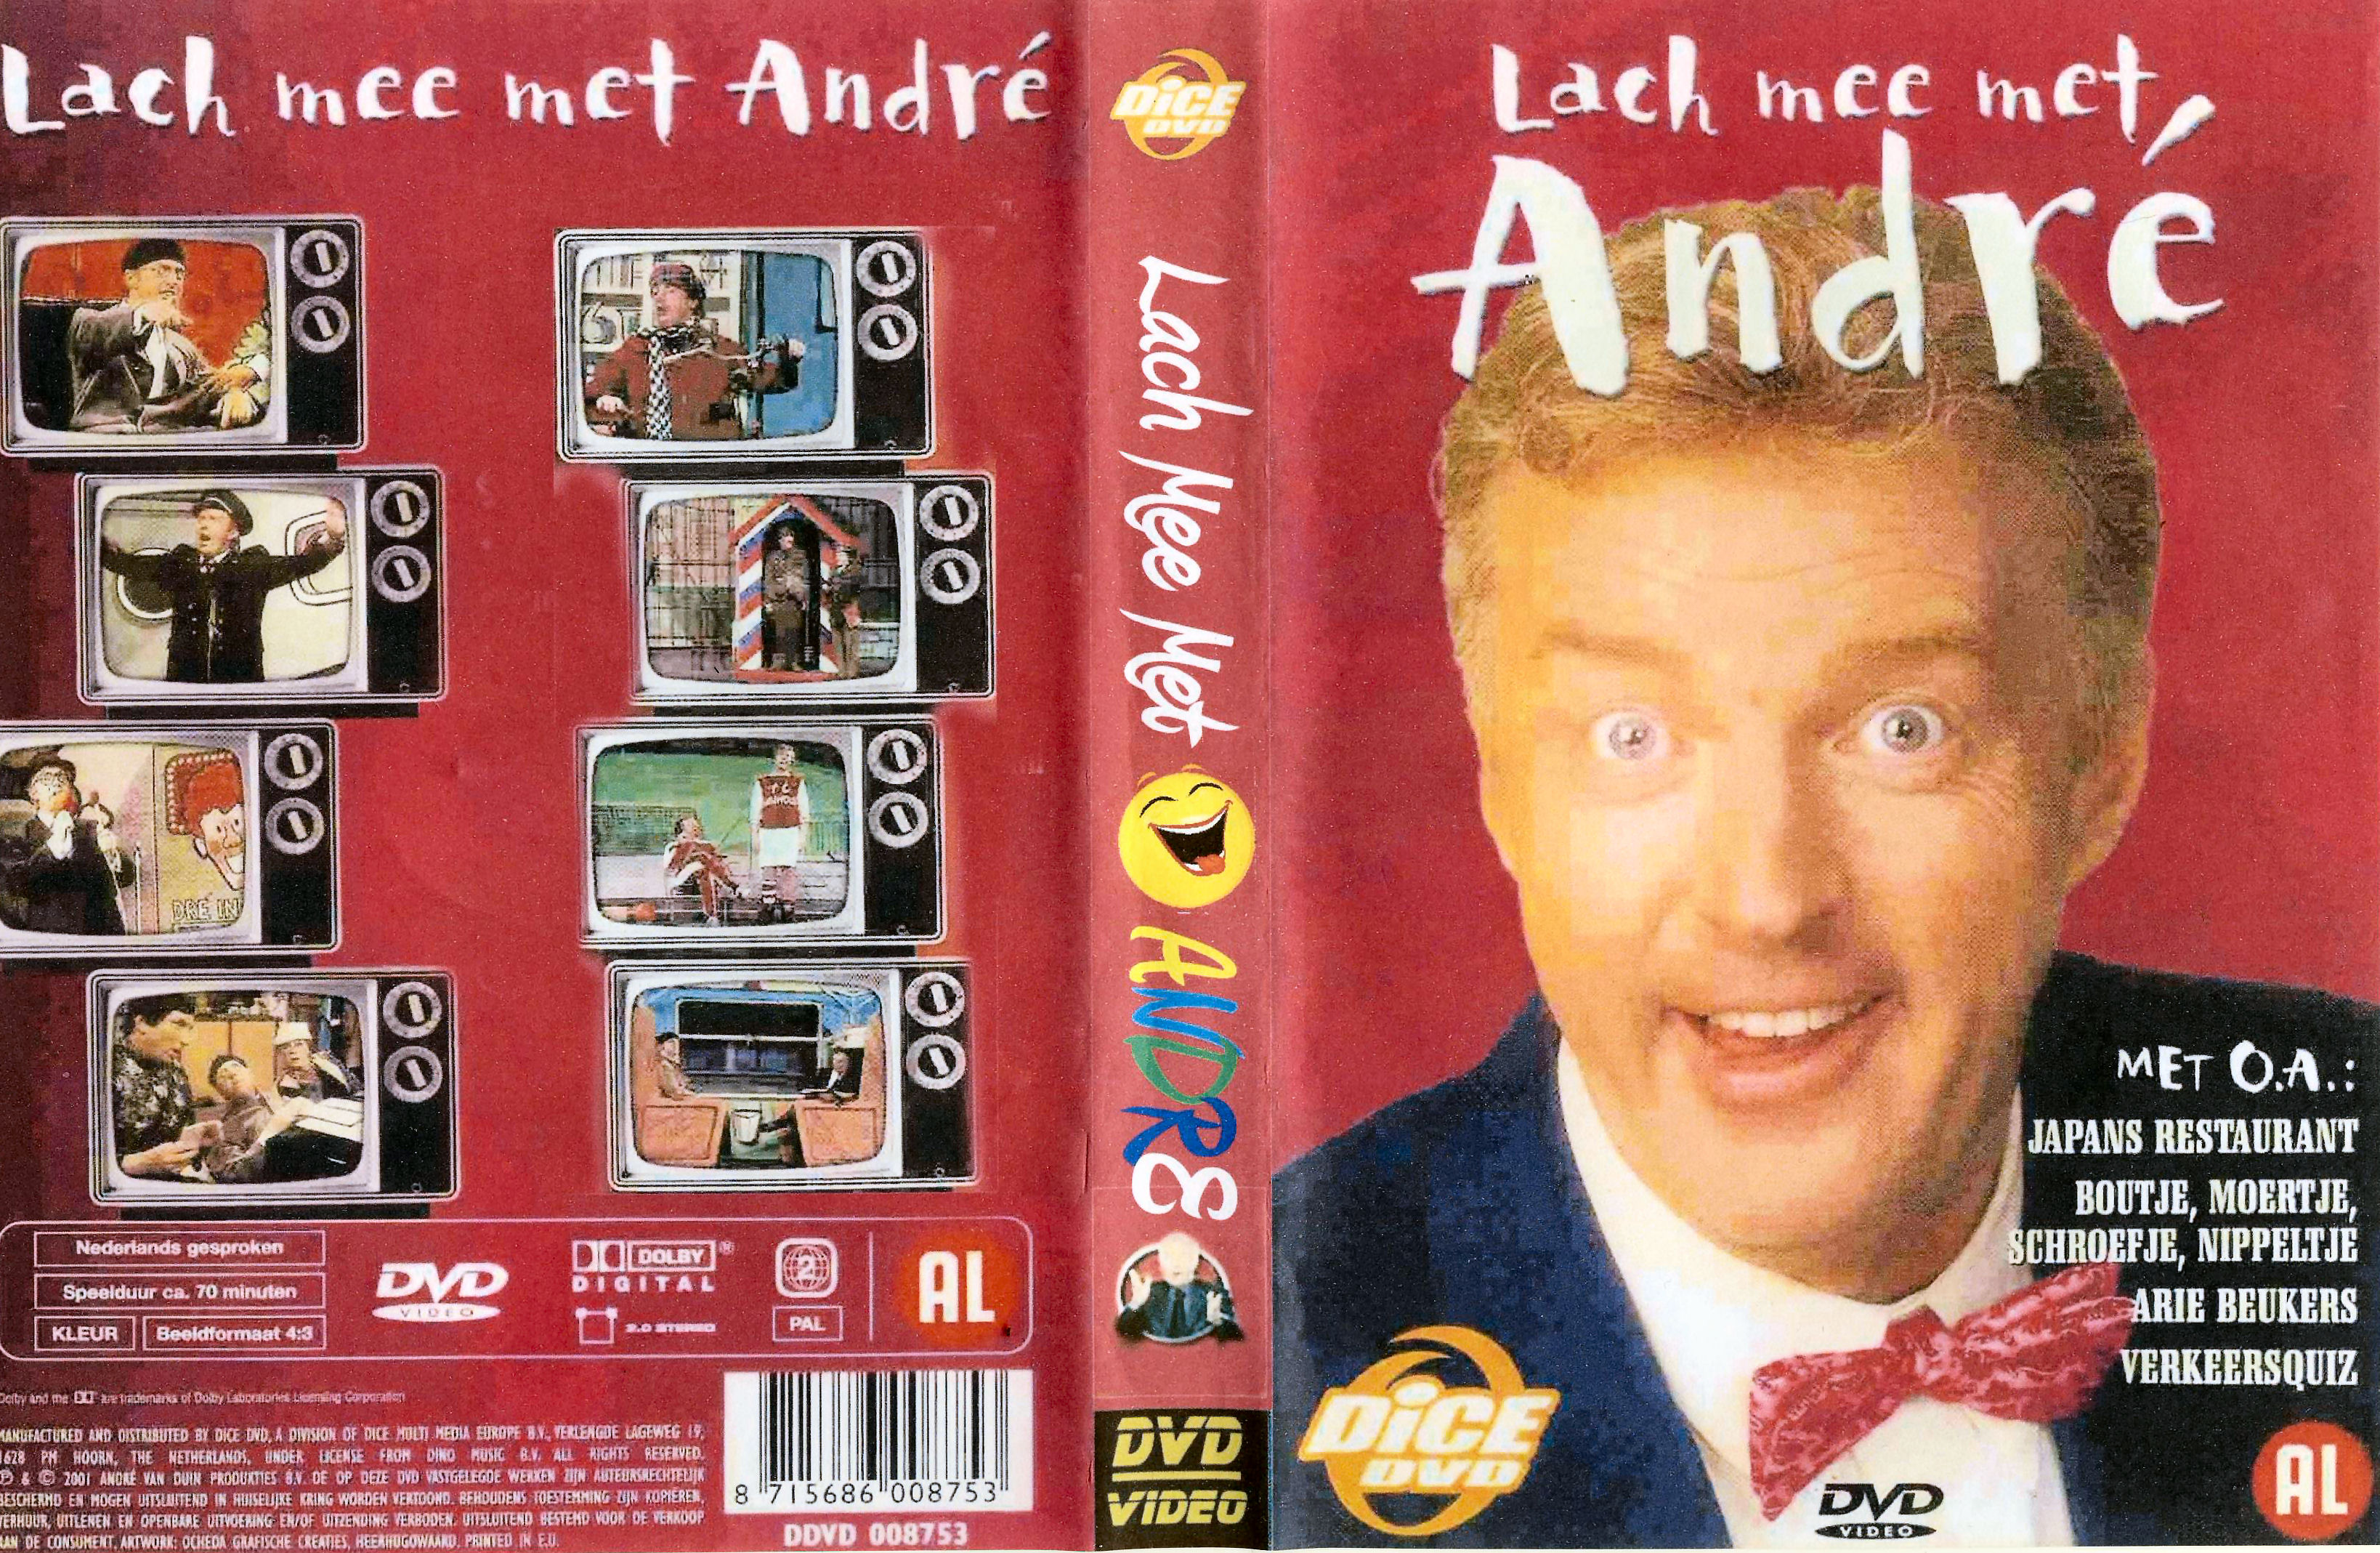 Lach mee met Andre DVD 3 van 6